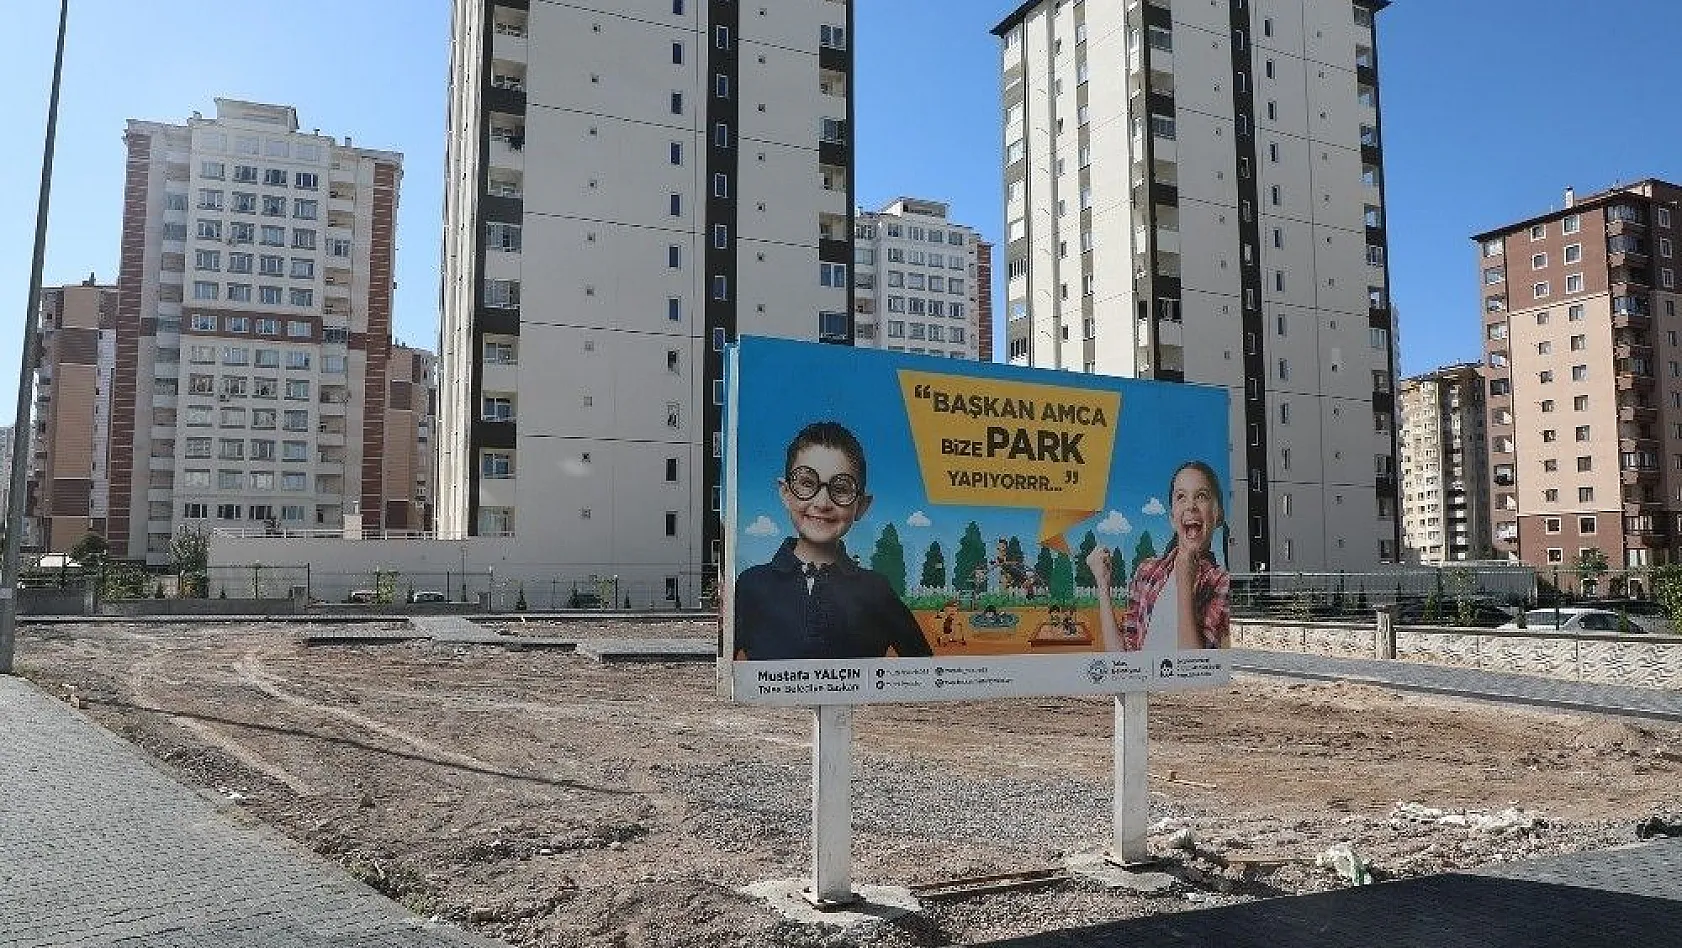 Yenidoğan'a Yeni Park
